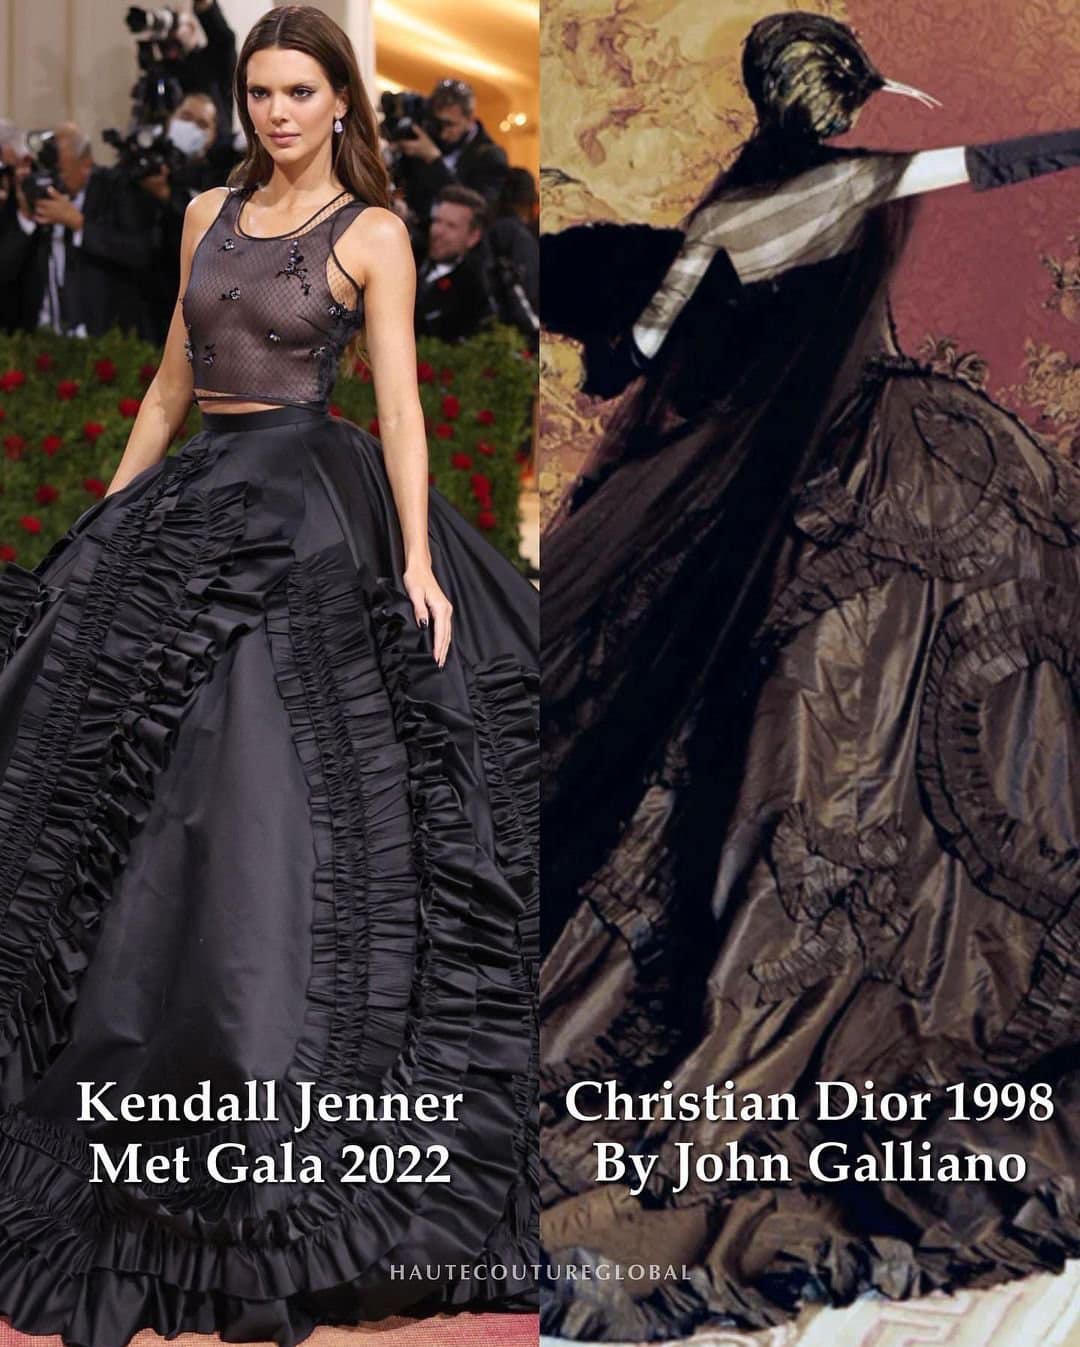 Từ những chi tiết bo chun đến phần vải tulle mềm mại được tinh giản thành chiếc áo tank top quyến rũ, không ai khác ngoài Kendall Jenner mới có thể lột tả được tinh thần nữ quyền từ bản thiết kế gốc.